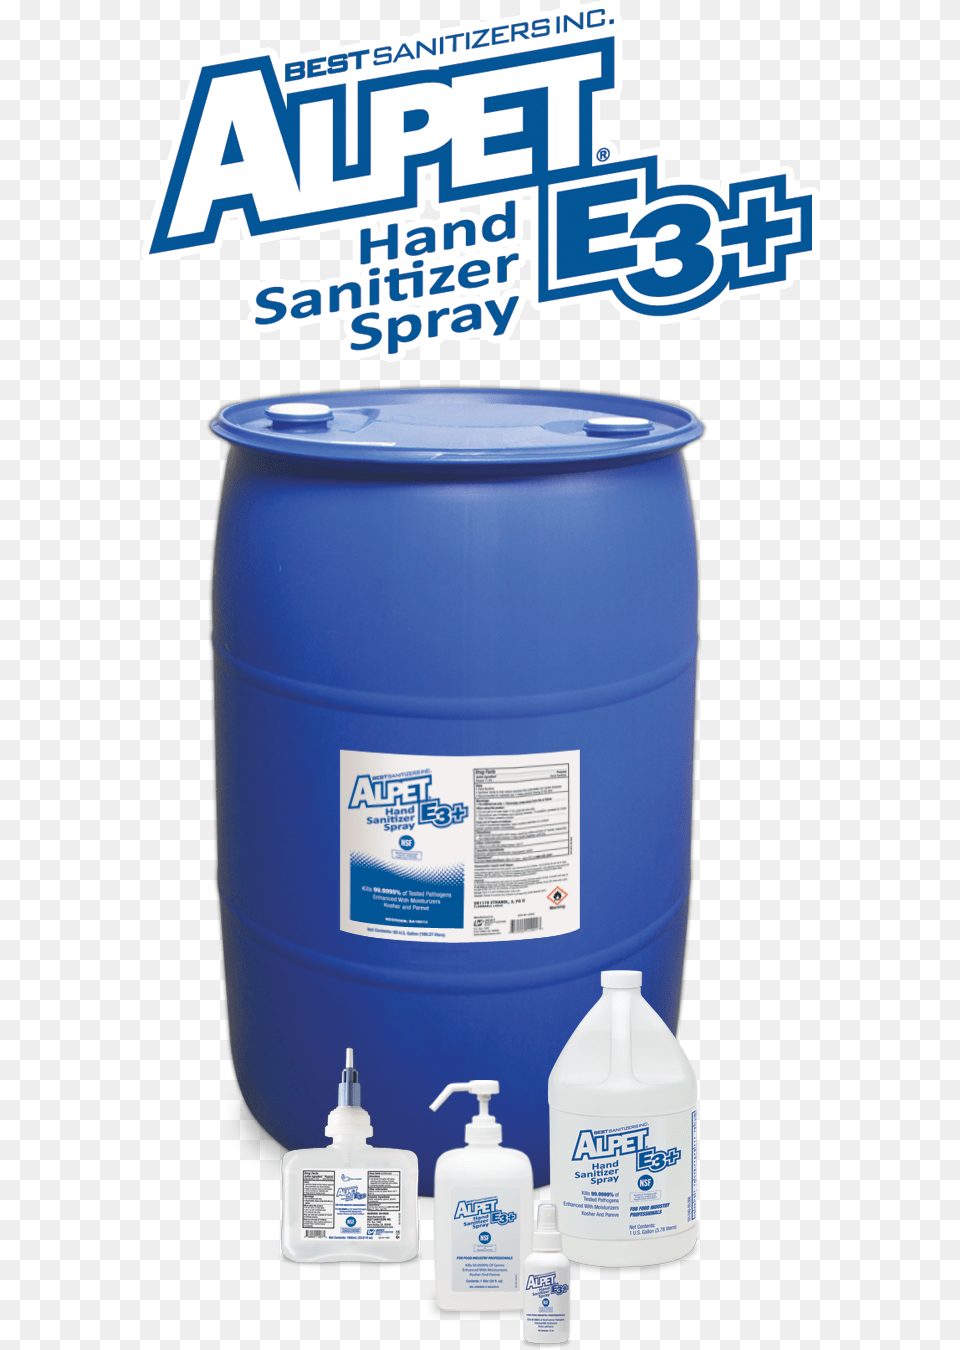 Best Sanitizers Alpet E3 Plus Hand Sanitizer Spray Plastic Bottle Png